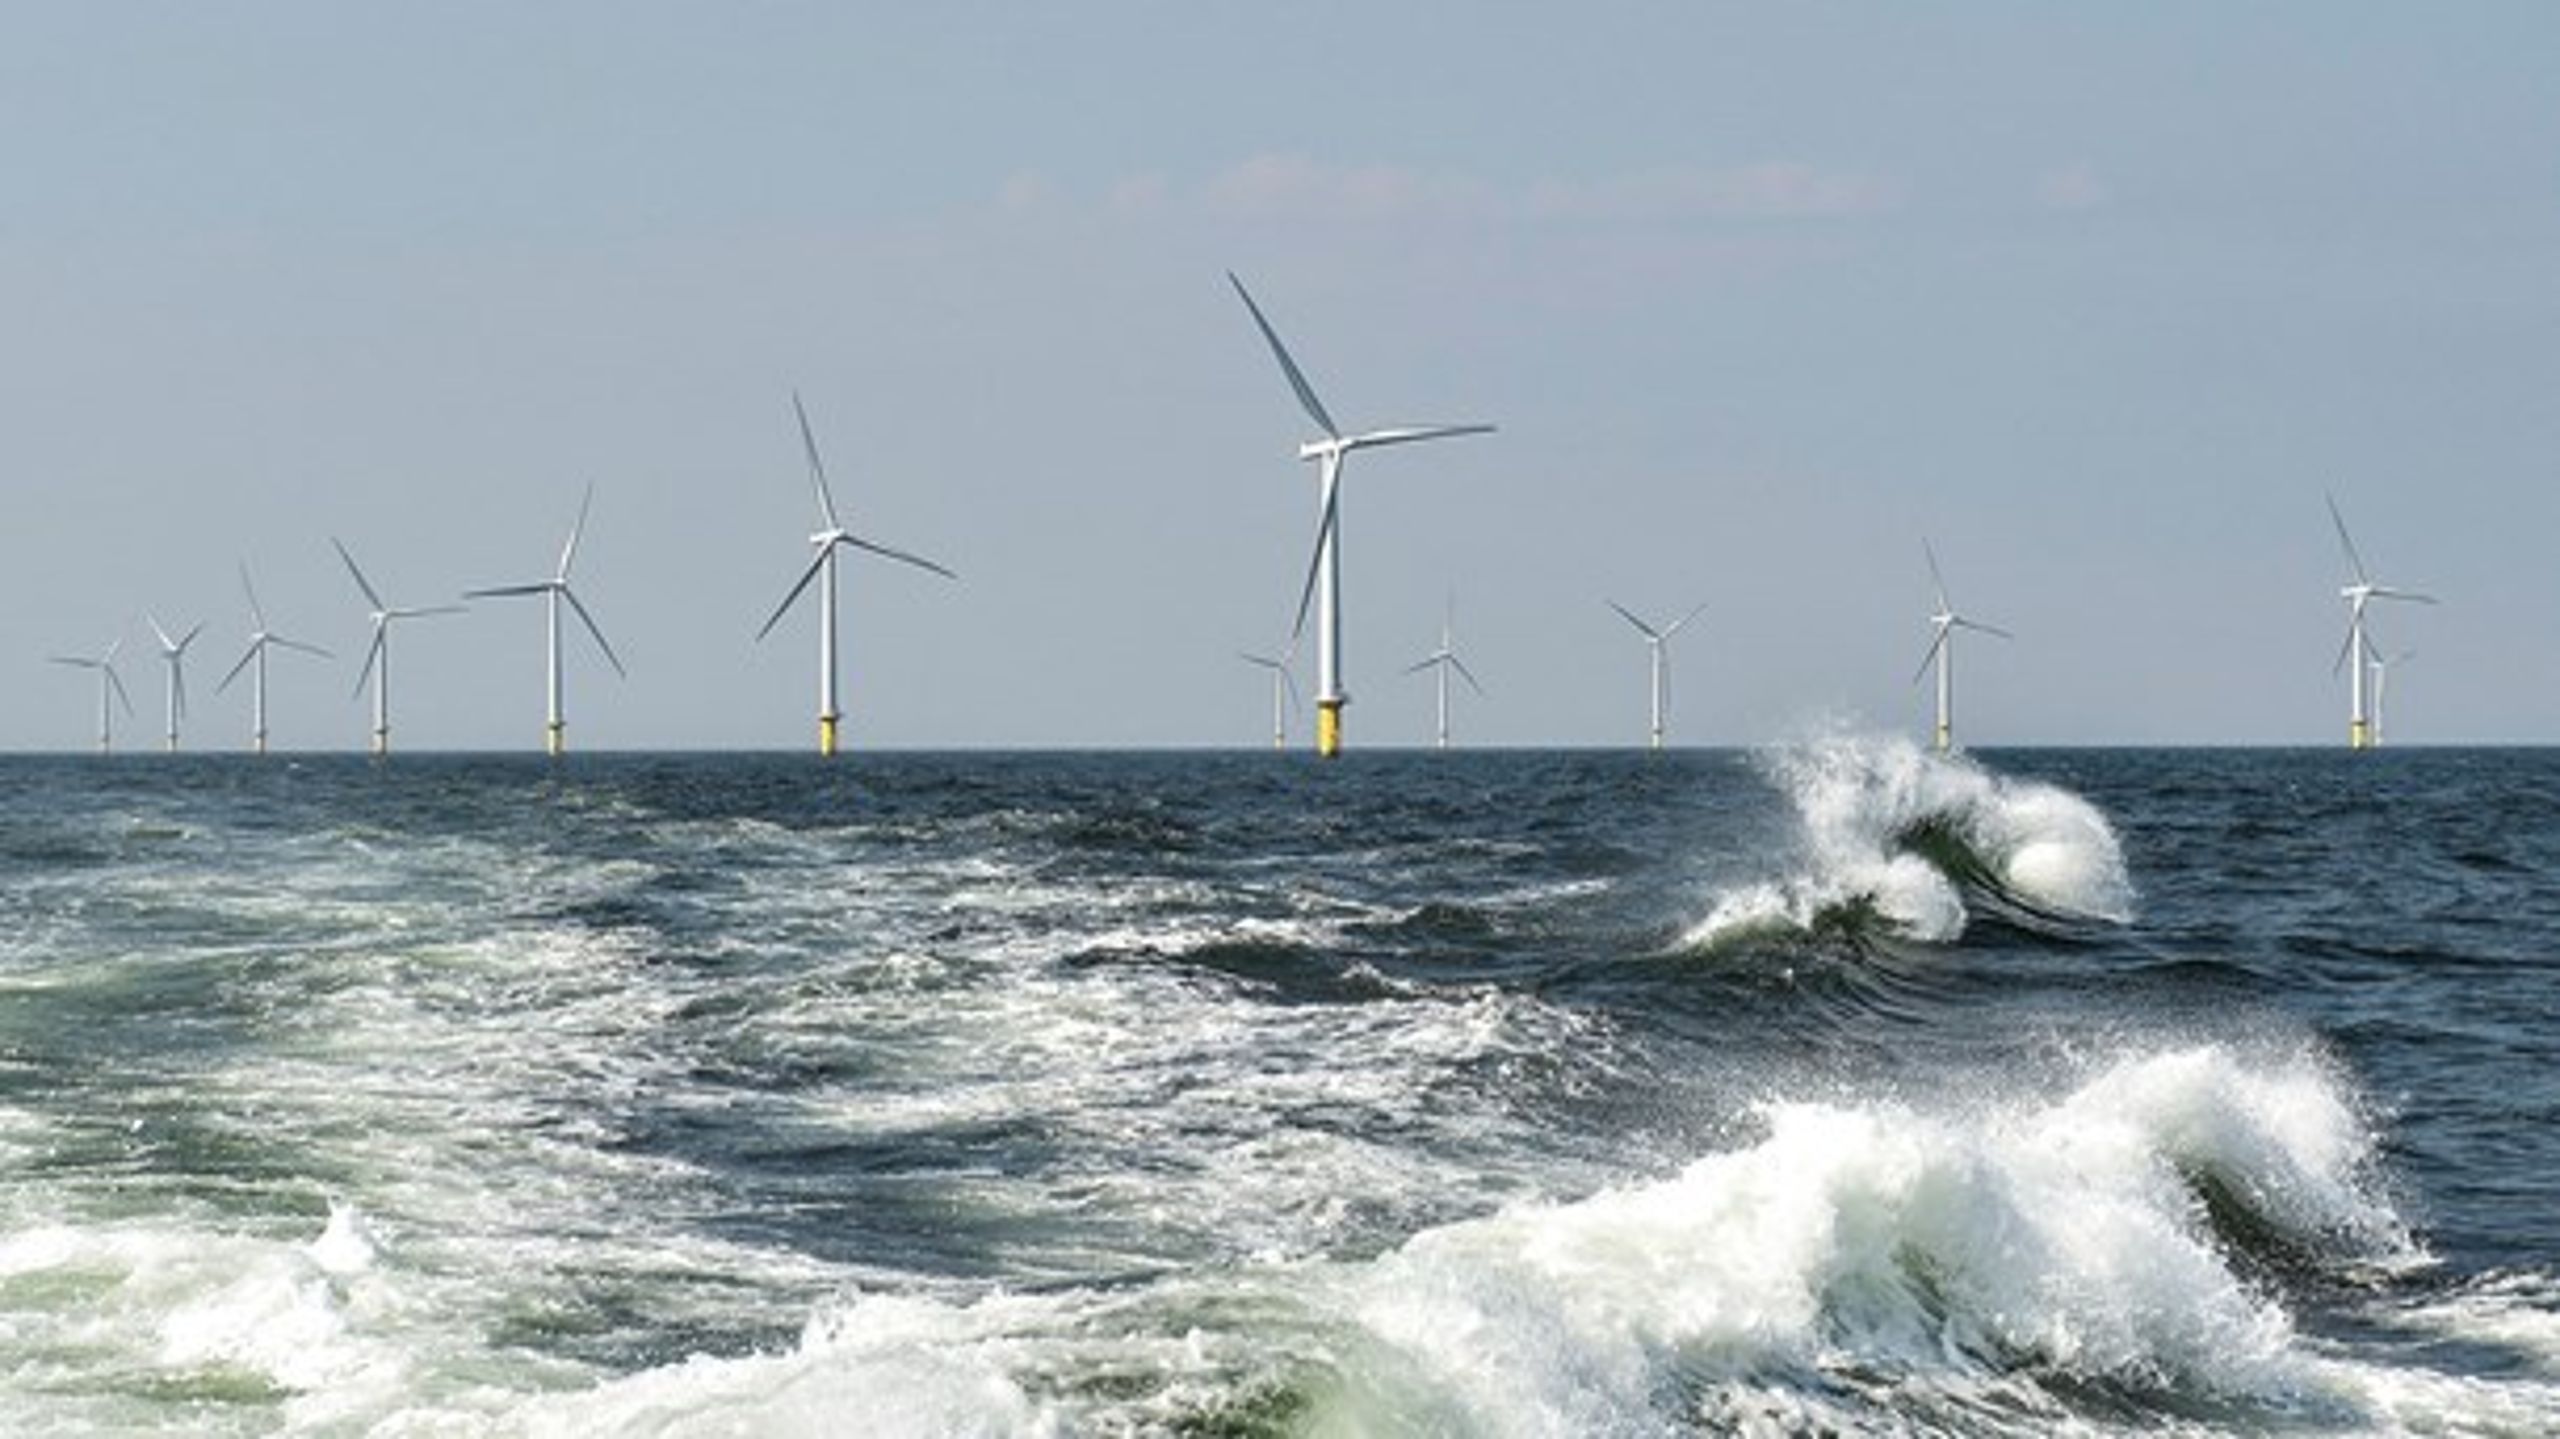 Fortsat statsligt medejerskab af Ørsted sikrer danskerne et løbende afkast af det grønne vindmølle-eventyr, som kun kunne realiseres med offentlige midler og støtteordninger, skriver Pelle Dragsted.